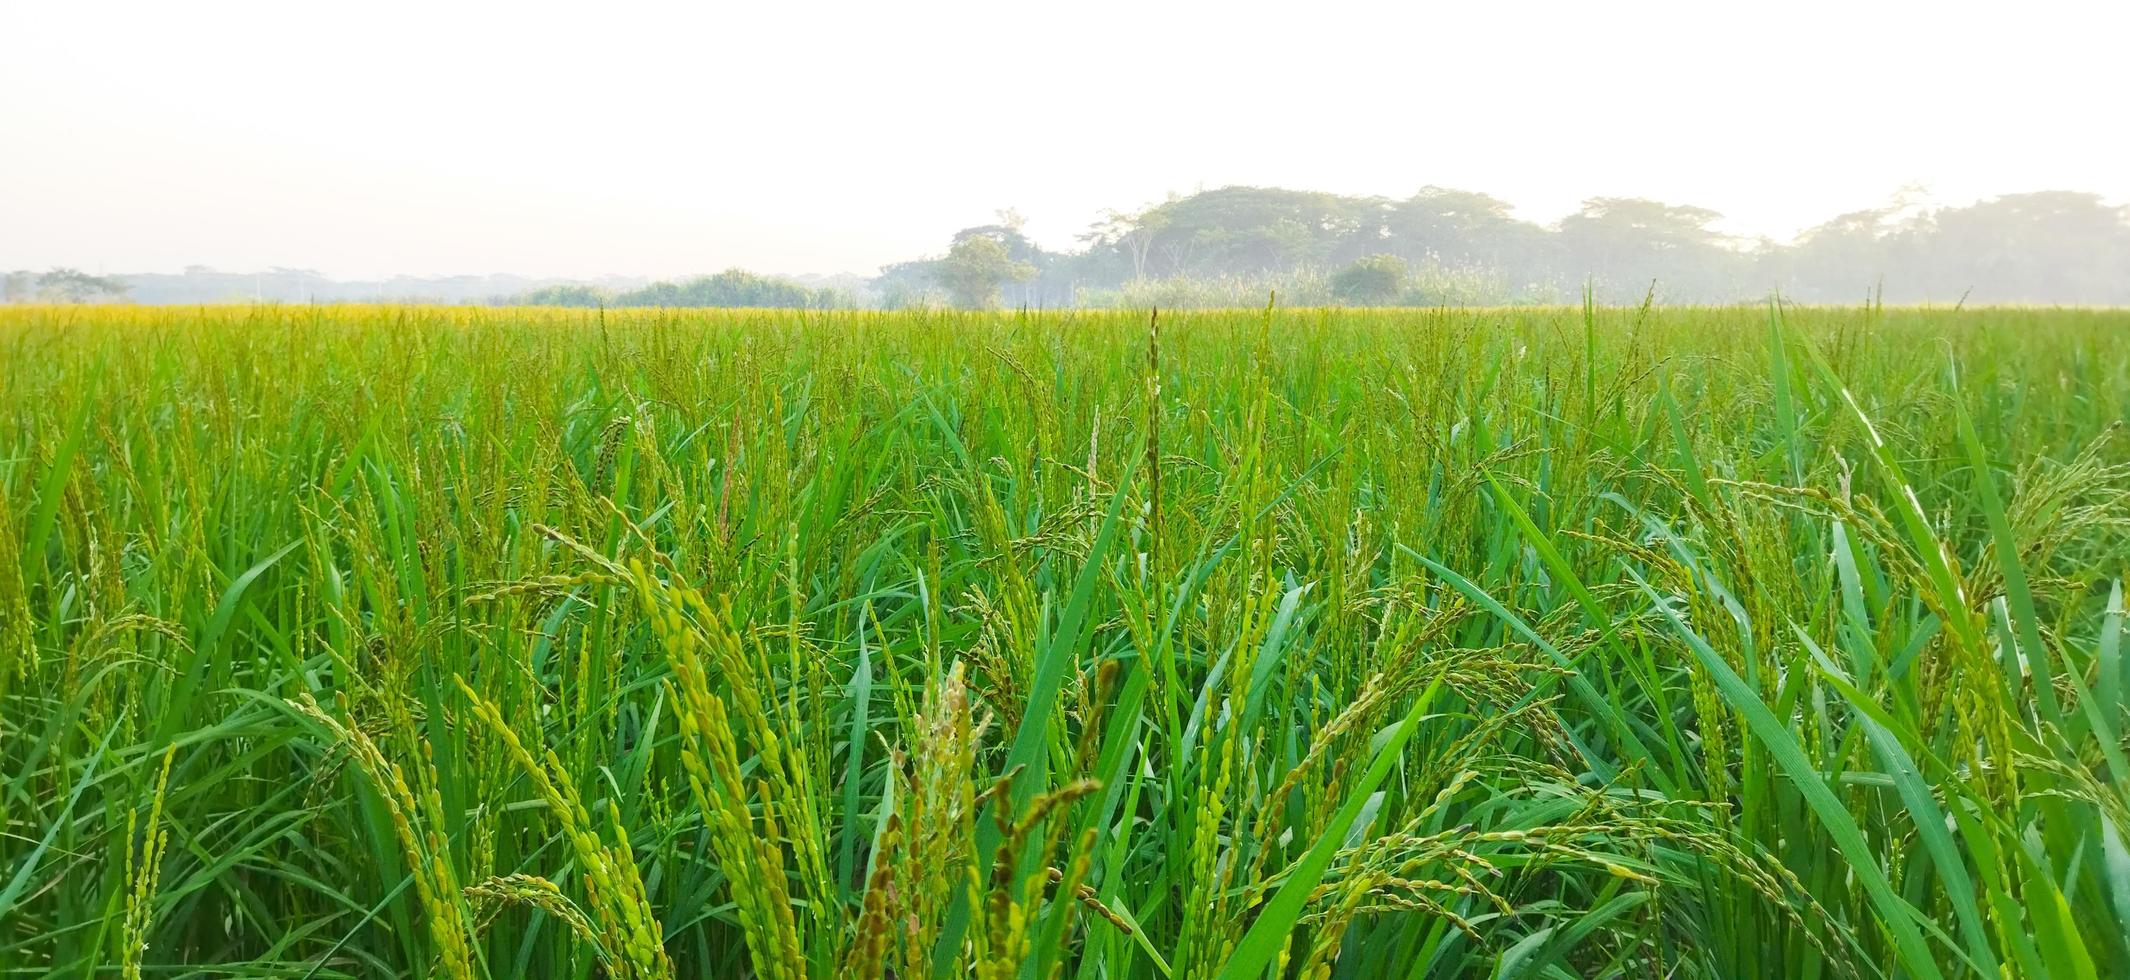 campo de arroz verde. close-up de sementes de arroz na espiga de arroz. lindo campo de arroz verde e espiga de arroz. foto